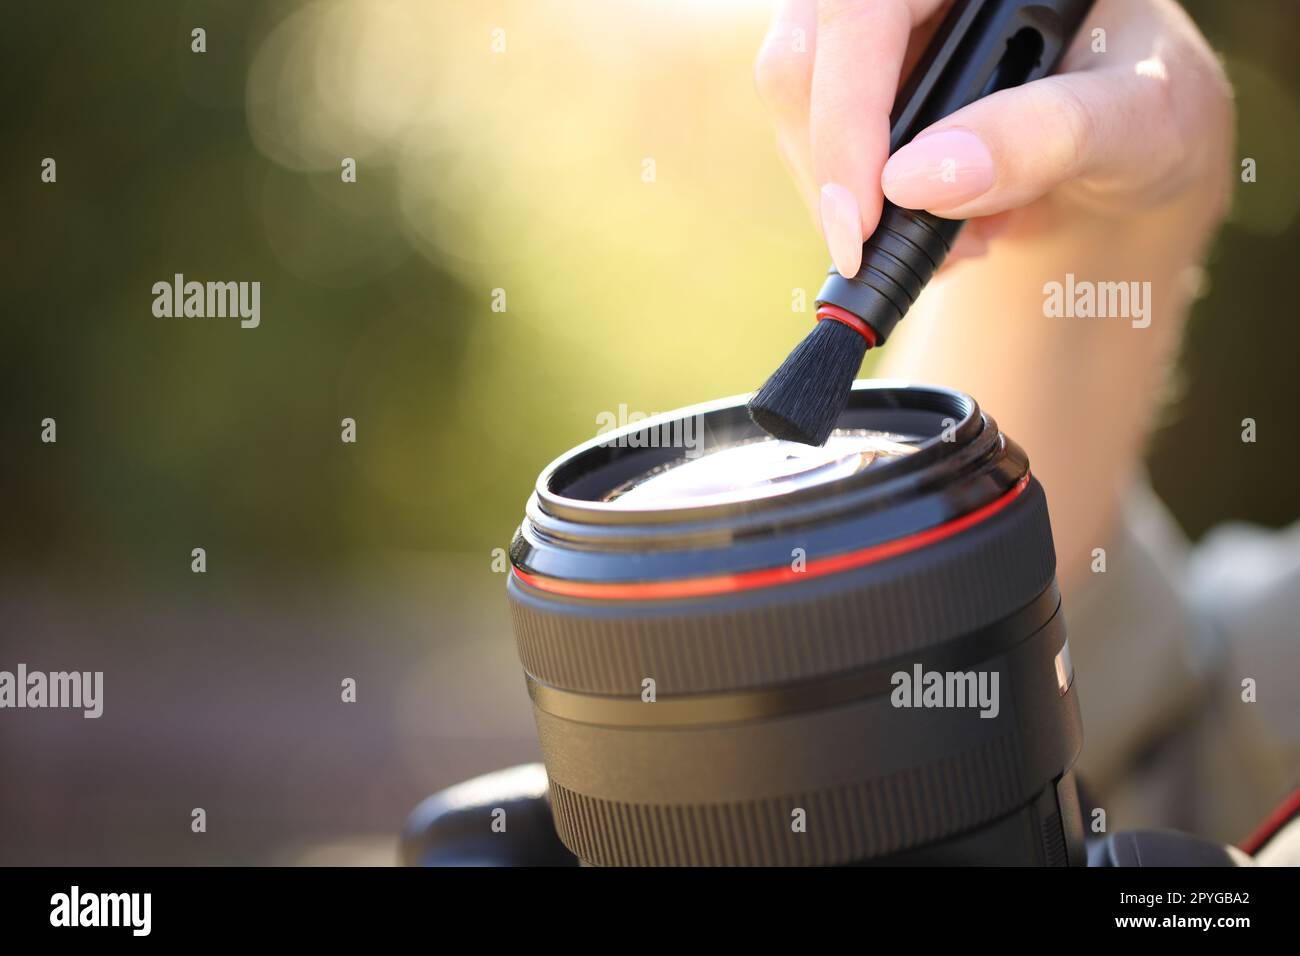 Photographe nettoyant l'objectif de l'appareil photo avec une brosse Banque D'Images